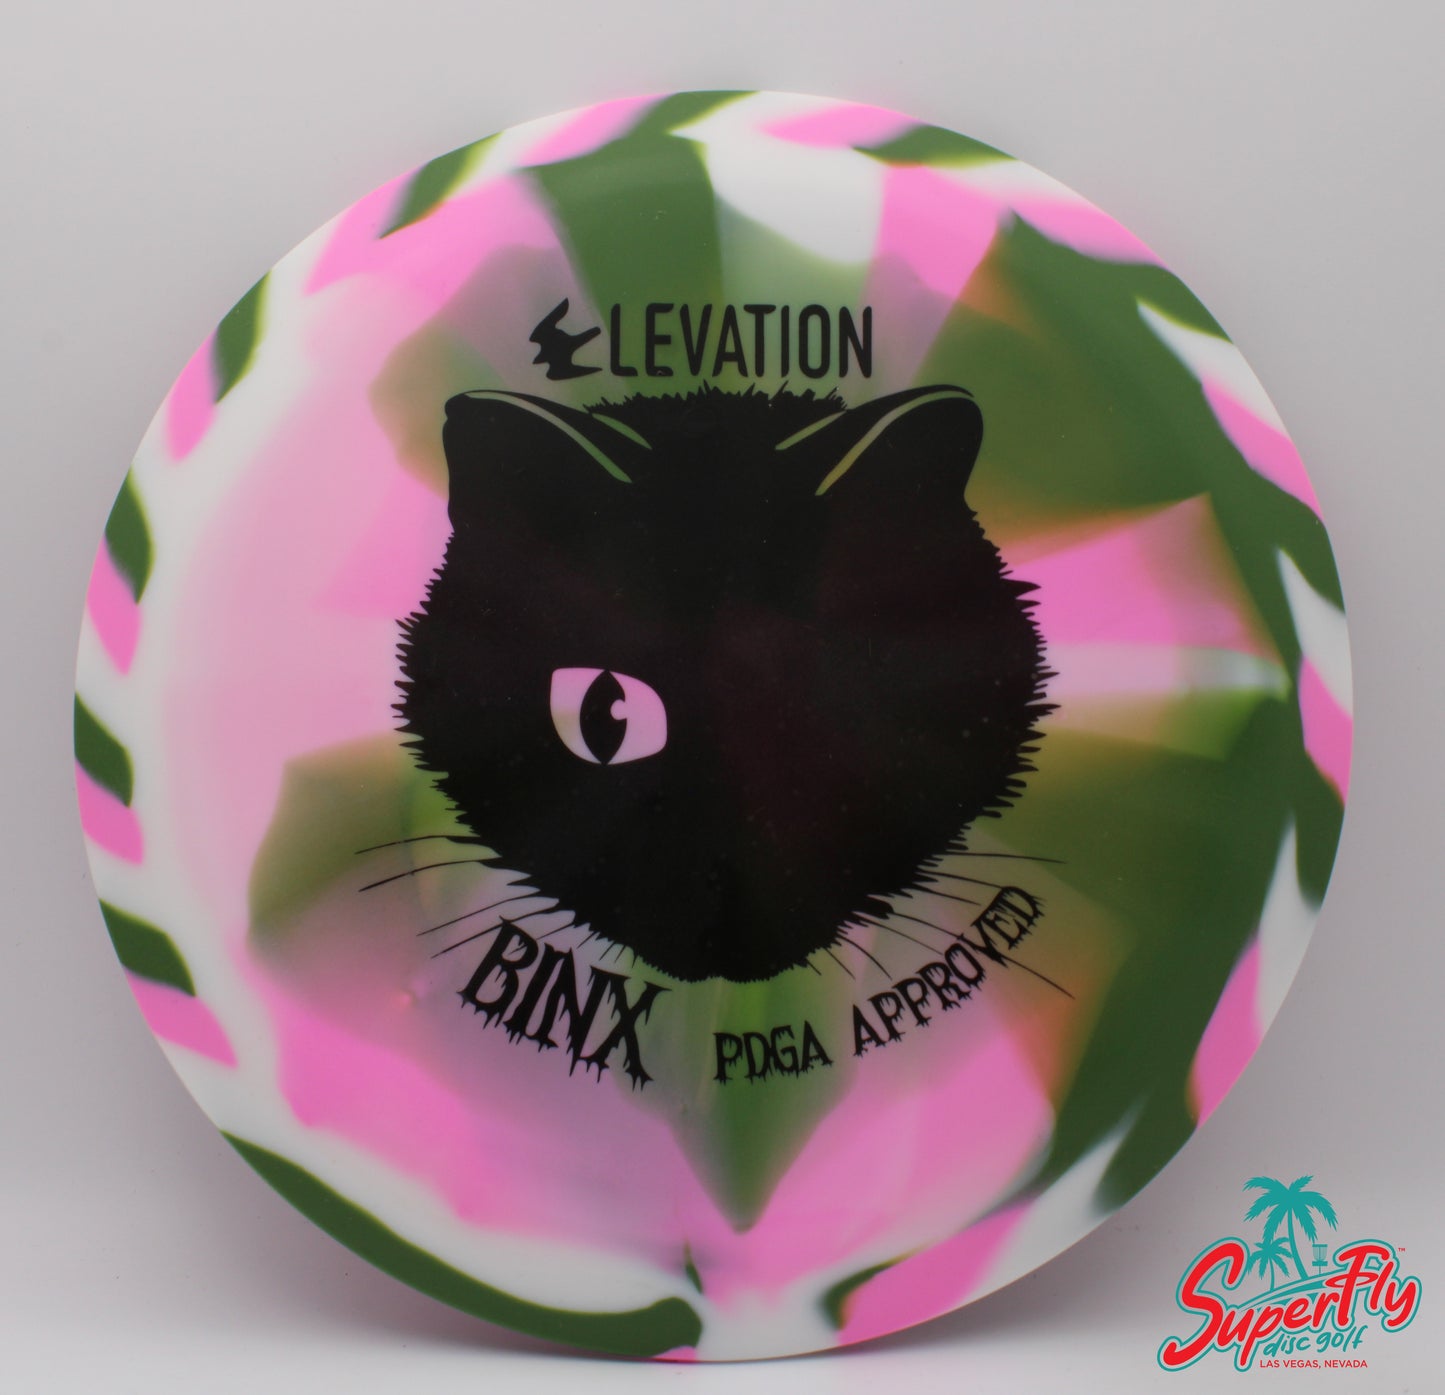 Elevation Discs Binx